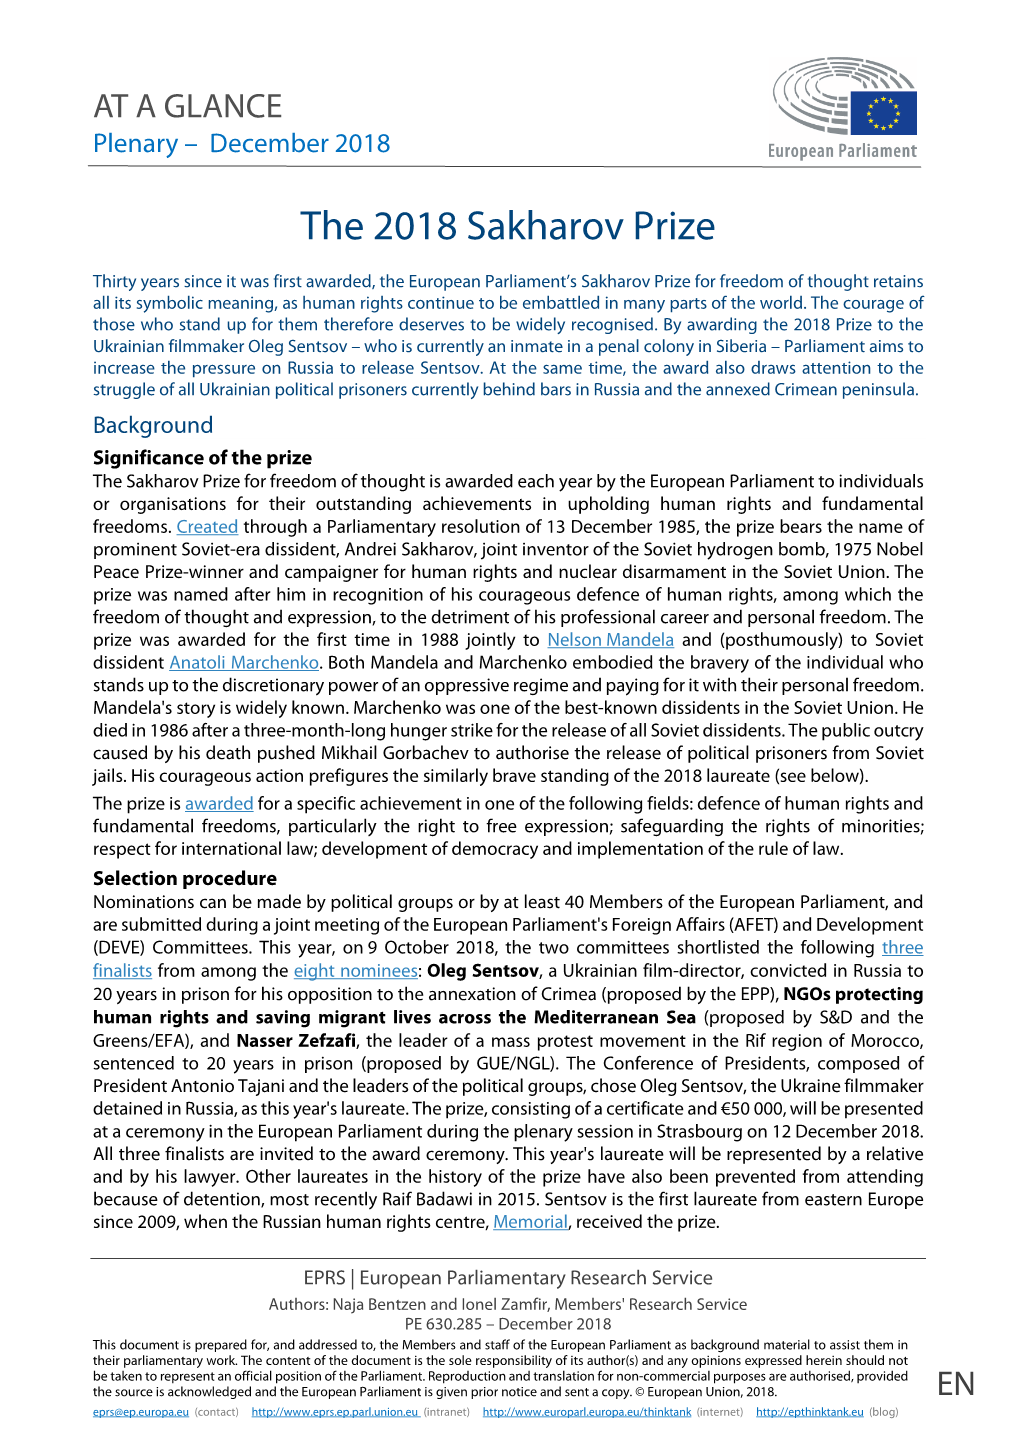 The 2018 Sakharov Prize